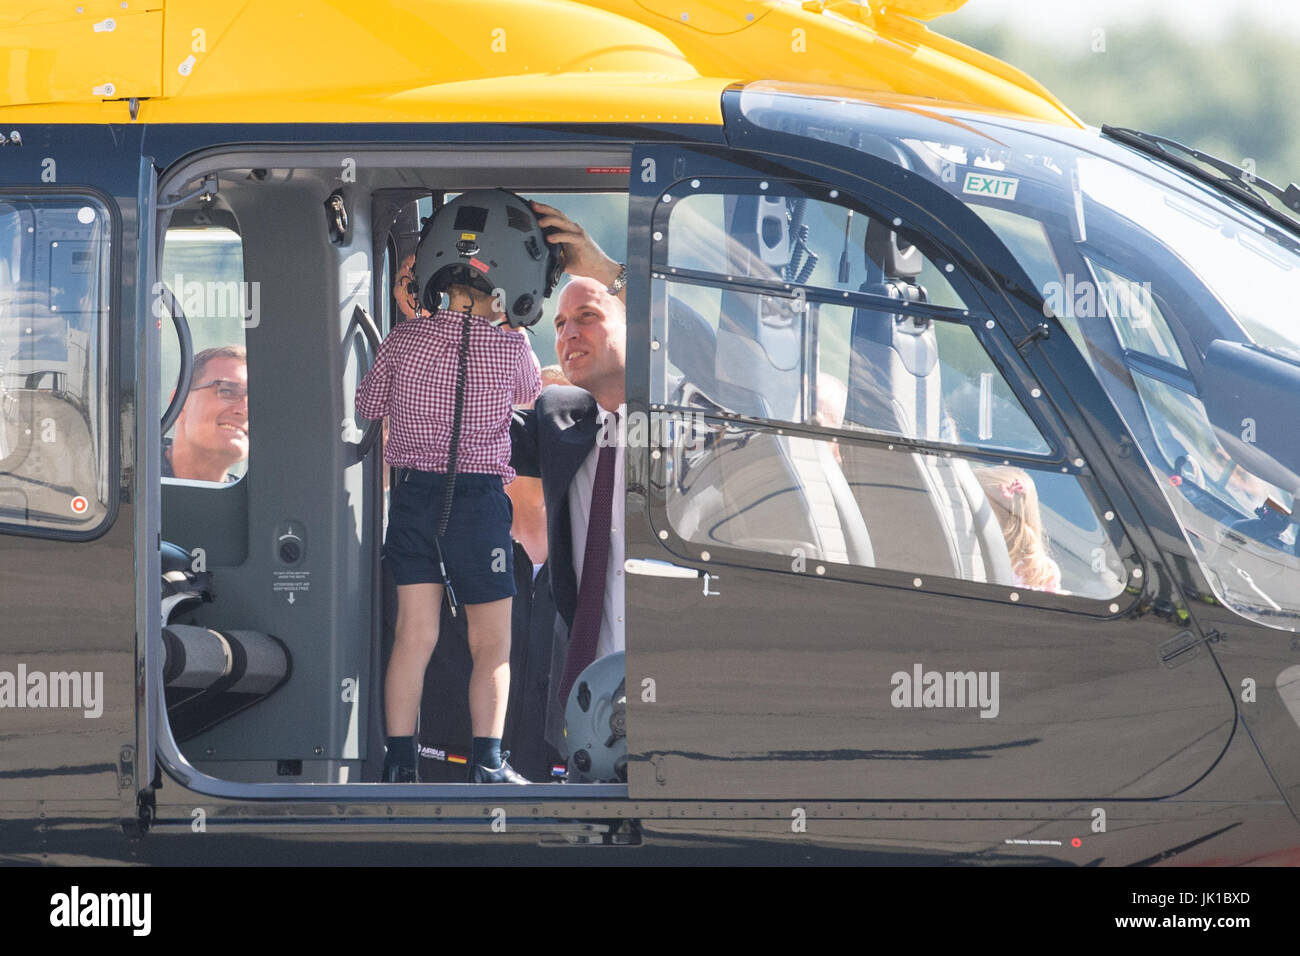 Prince George est dans un hélicoptère de sauvetage comme son père le duc de Cambridge met un casque sur sa tête, au cours d'une visite d'Airbus à Hambourg, en Allemagne avec la duchesse de Cambridge et sa sœur La Princesse Charlotte. Banque D'Images